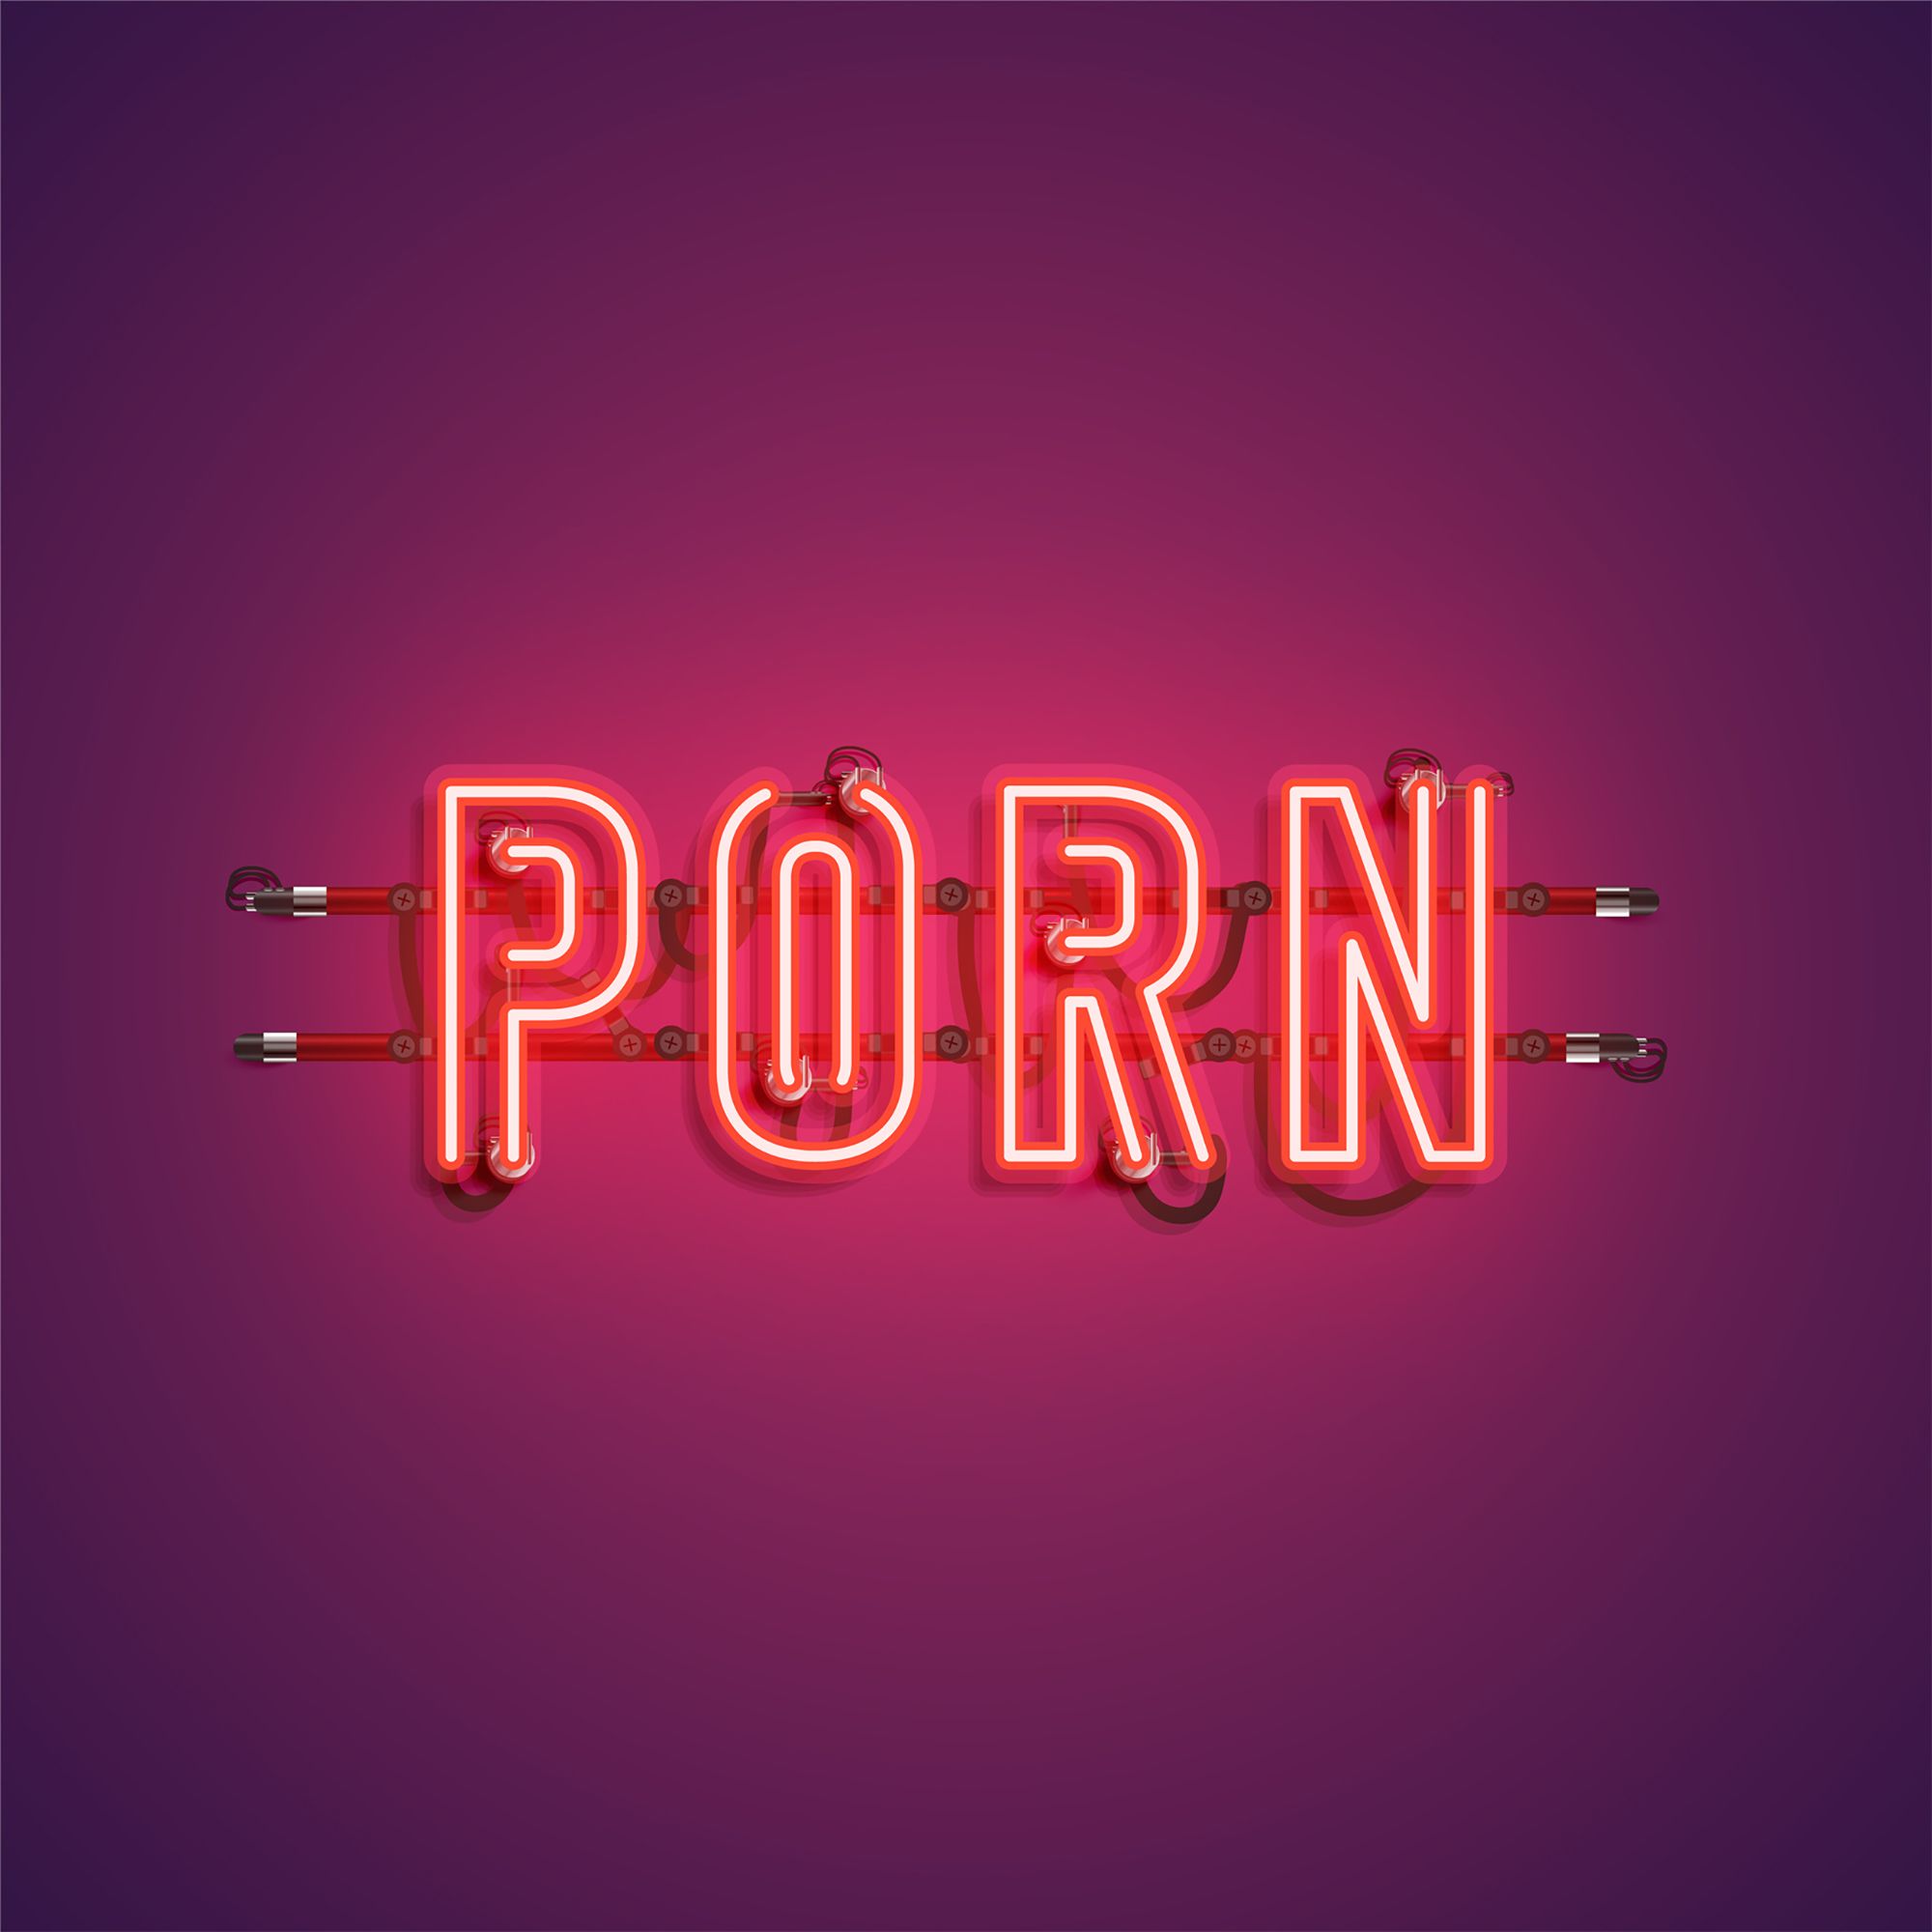 Rot beleuchtetes Wort "Porn" auf lila Hintergrund